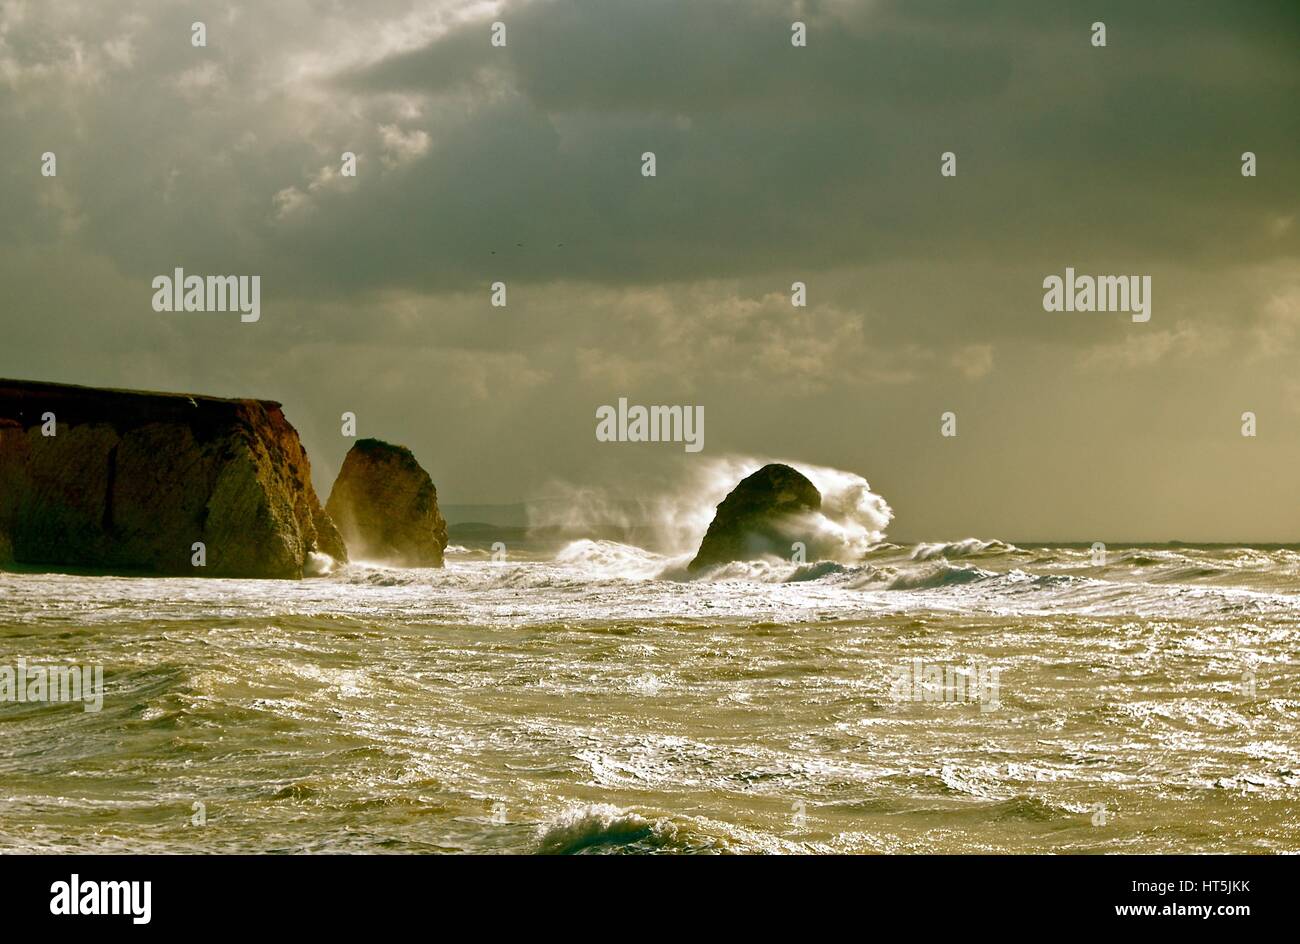 La baia di acqua dolce, Isle of Wight con un onda che si schiantano contro la roccia in una tempesta Foto Stock